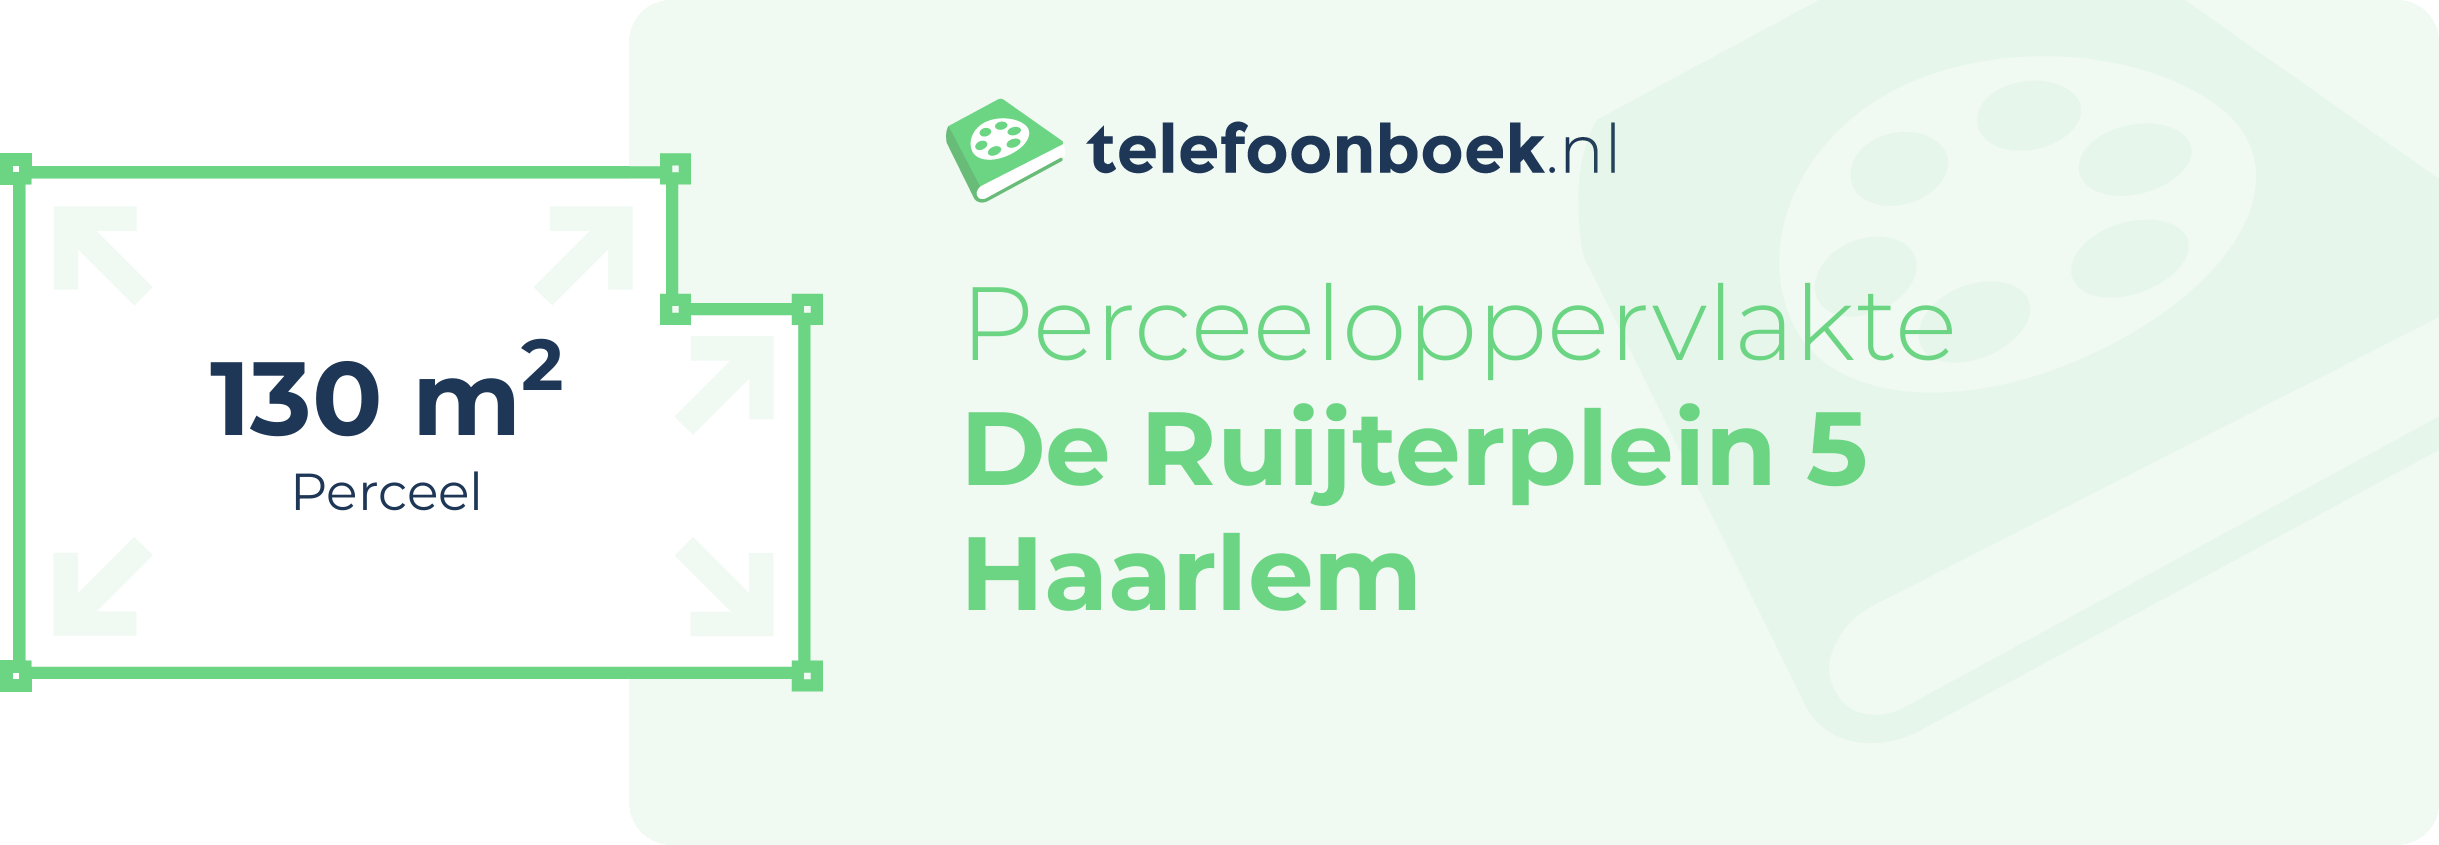 Perceeloppervlakte De Ruijterplein 5 Haarlem